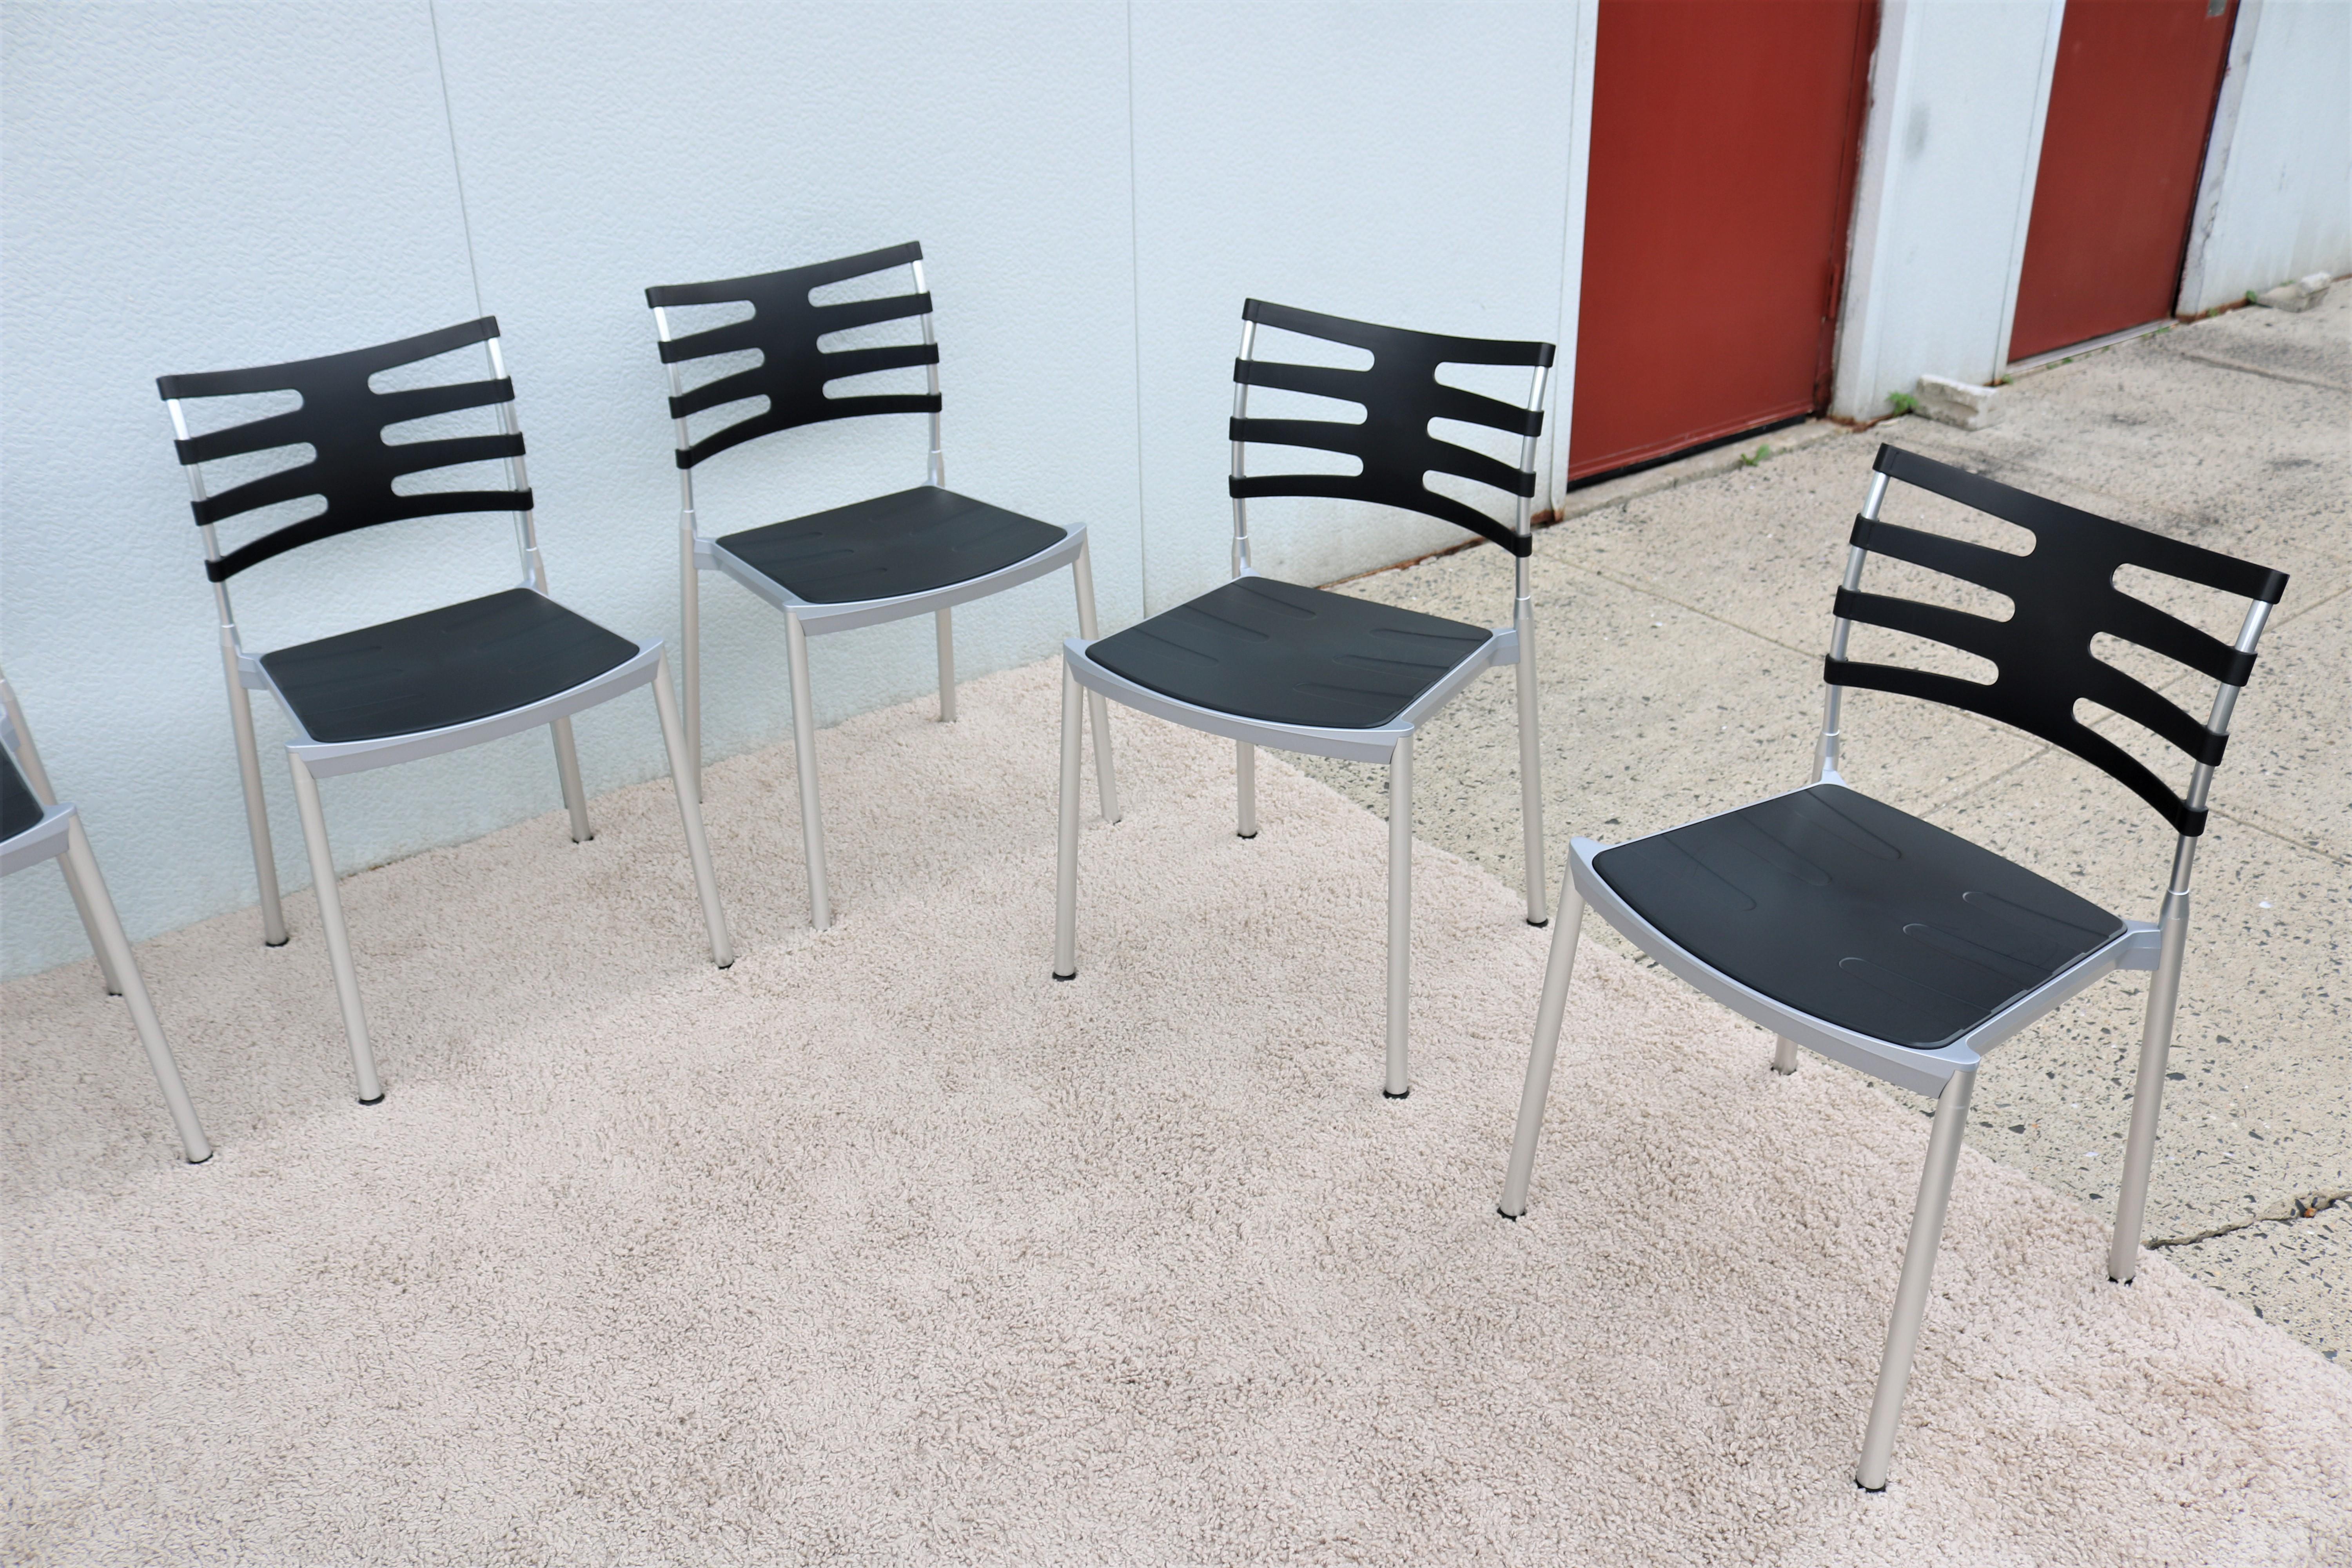 Diese eleganten und minimalistischen Ice-Stühle sind stilvoll und funktional und eignen sich gleichermaßen für den Innen- und Außenbereich.
Das leichte Design und die Stapelfunktion machen ihn zum perfekten Stuhl für die Gastronomie im Freien. Er